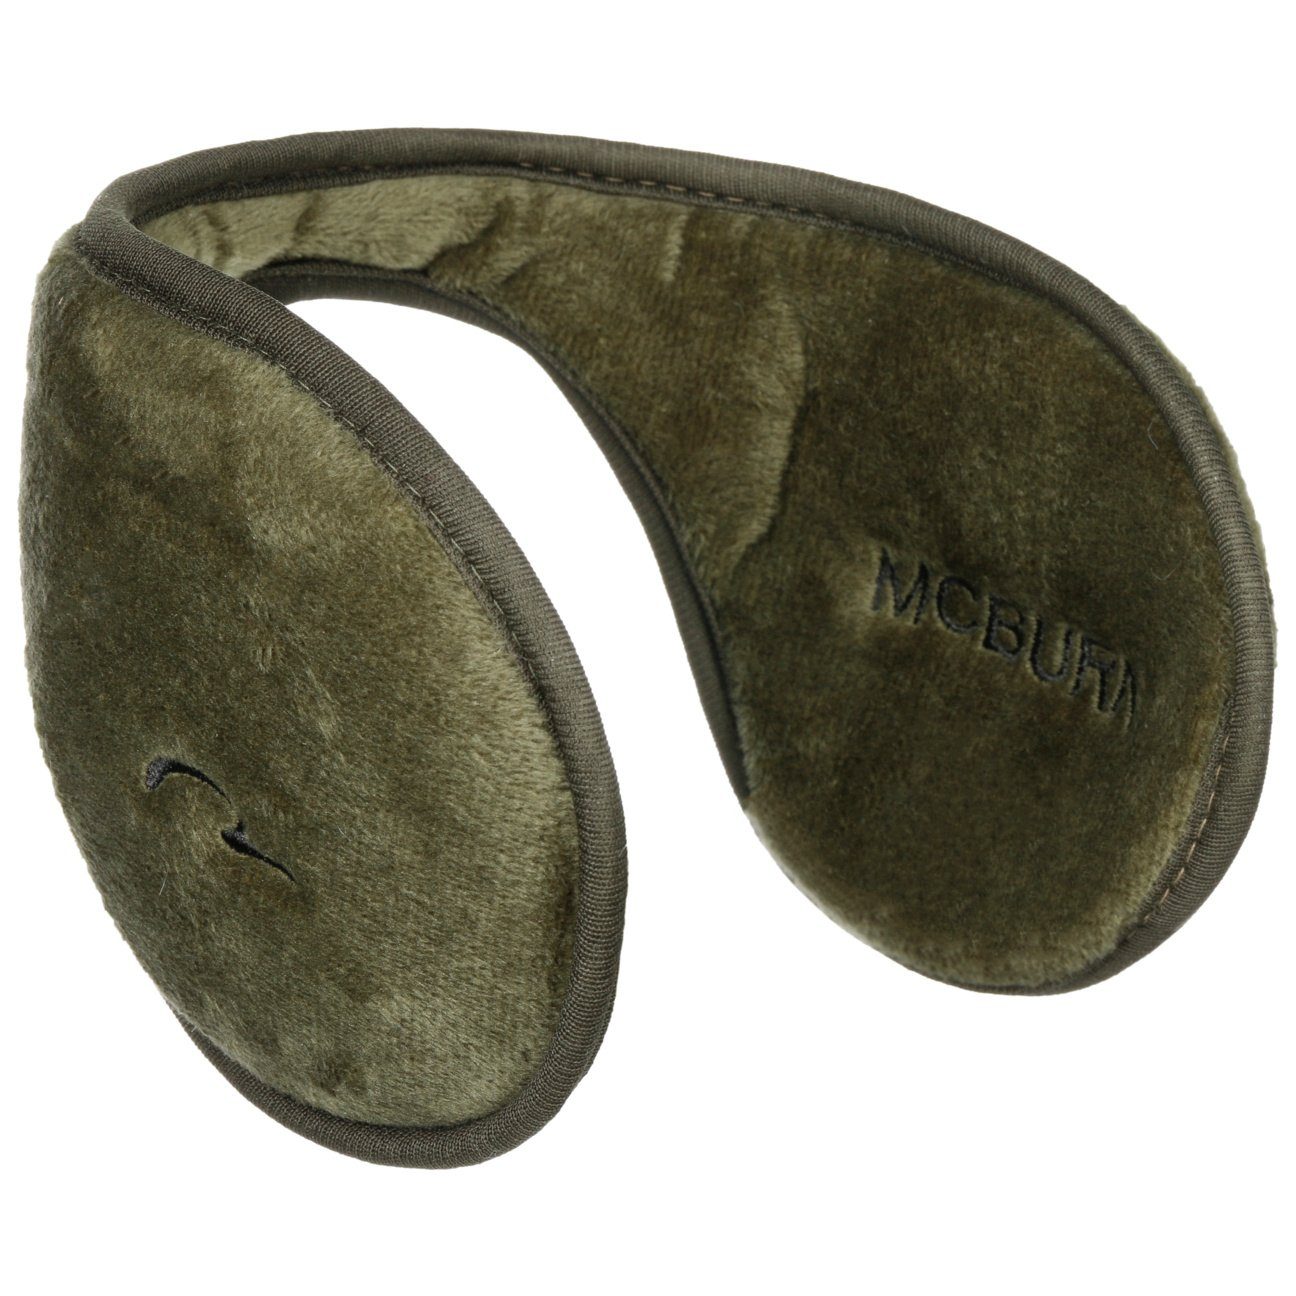 McBurn (1-St) Ohrenwärmer Ohrenschützer oliv